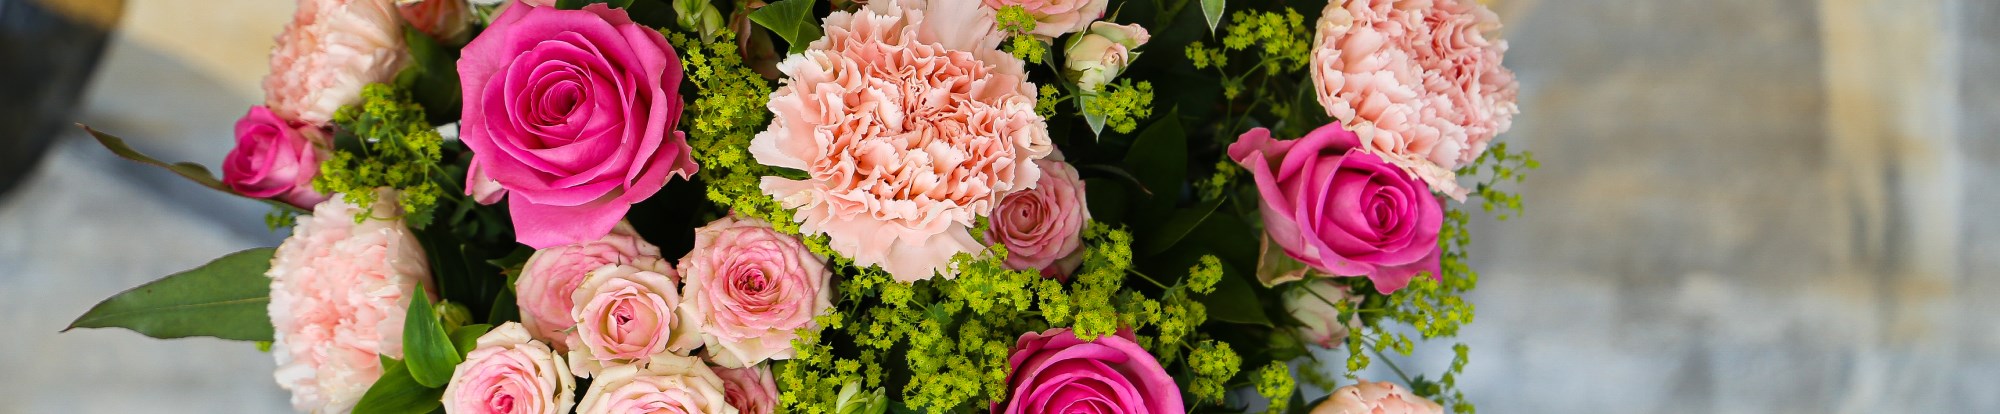 Cut Flowers, Bouquets & Arrangements